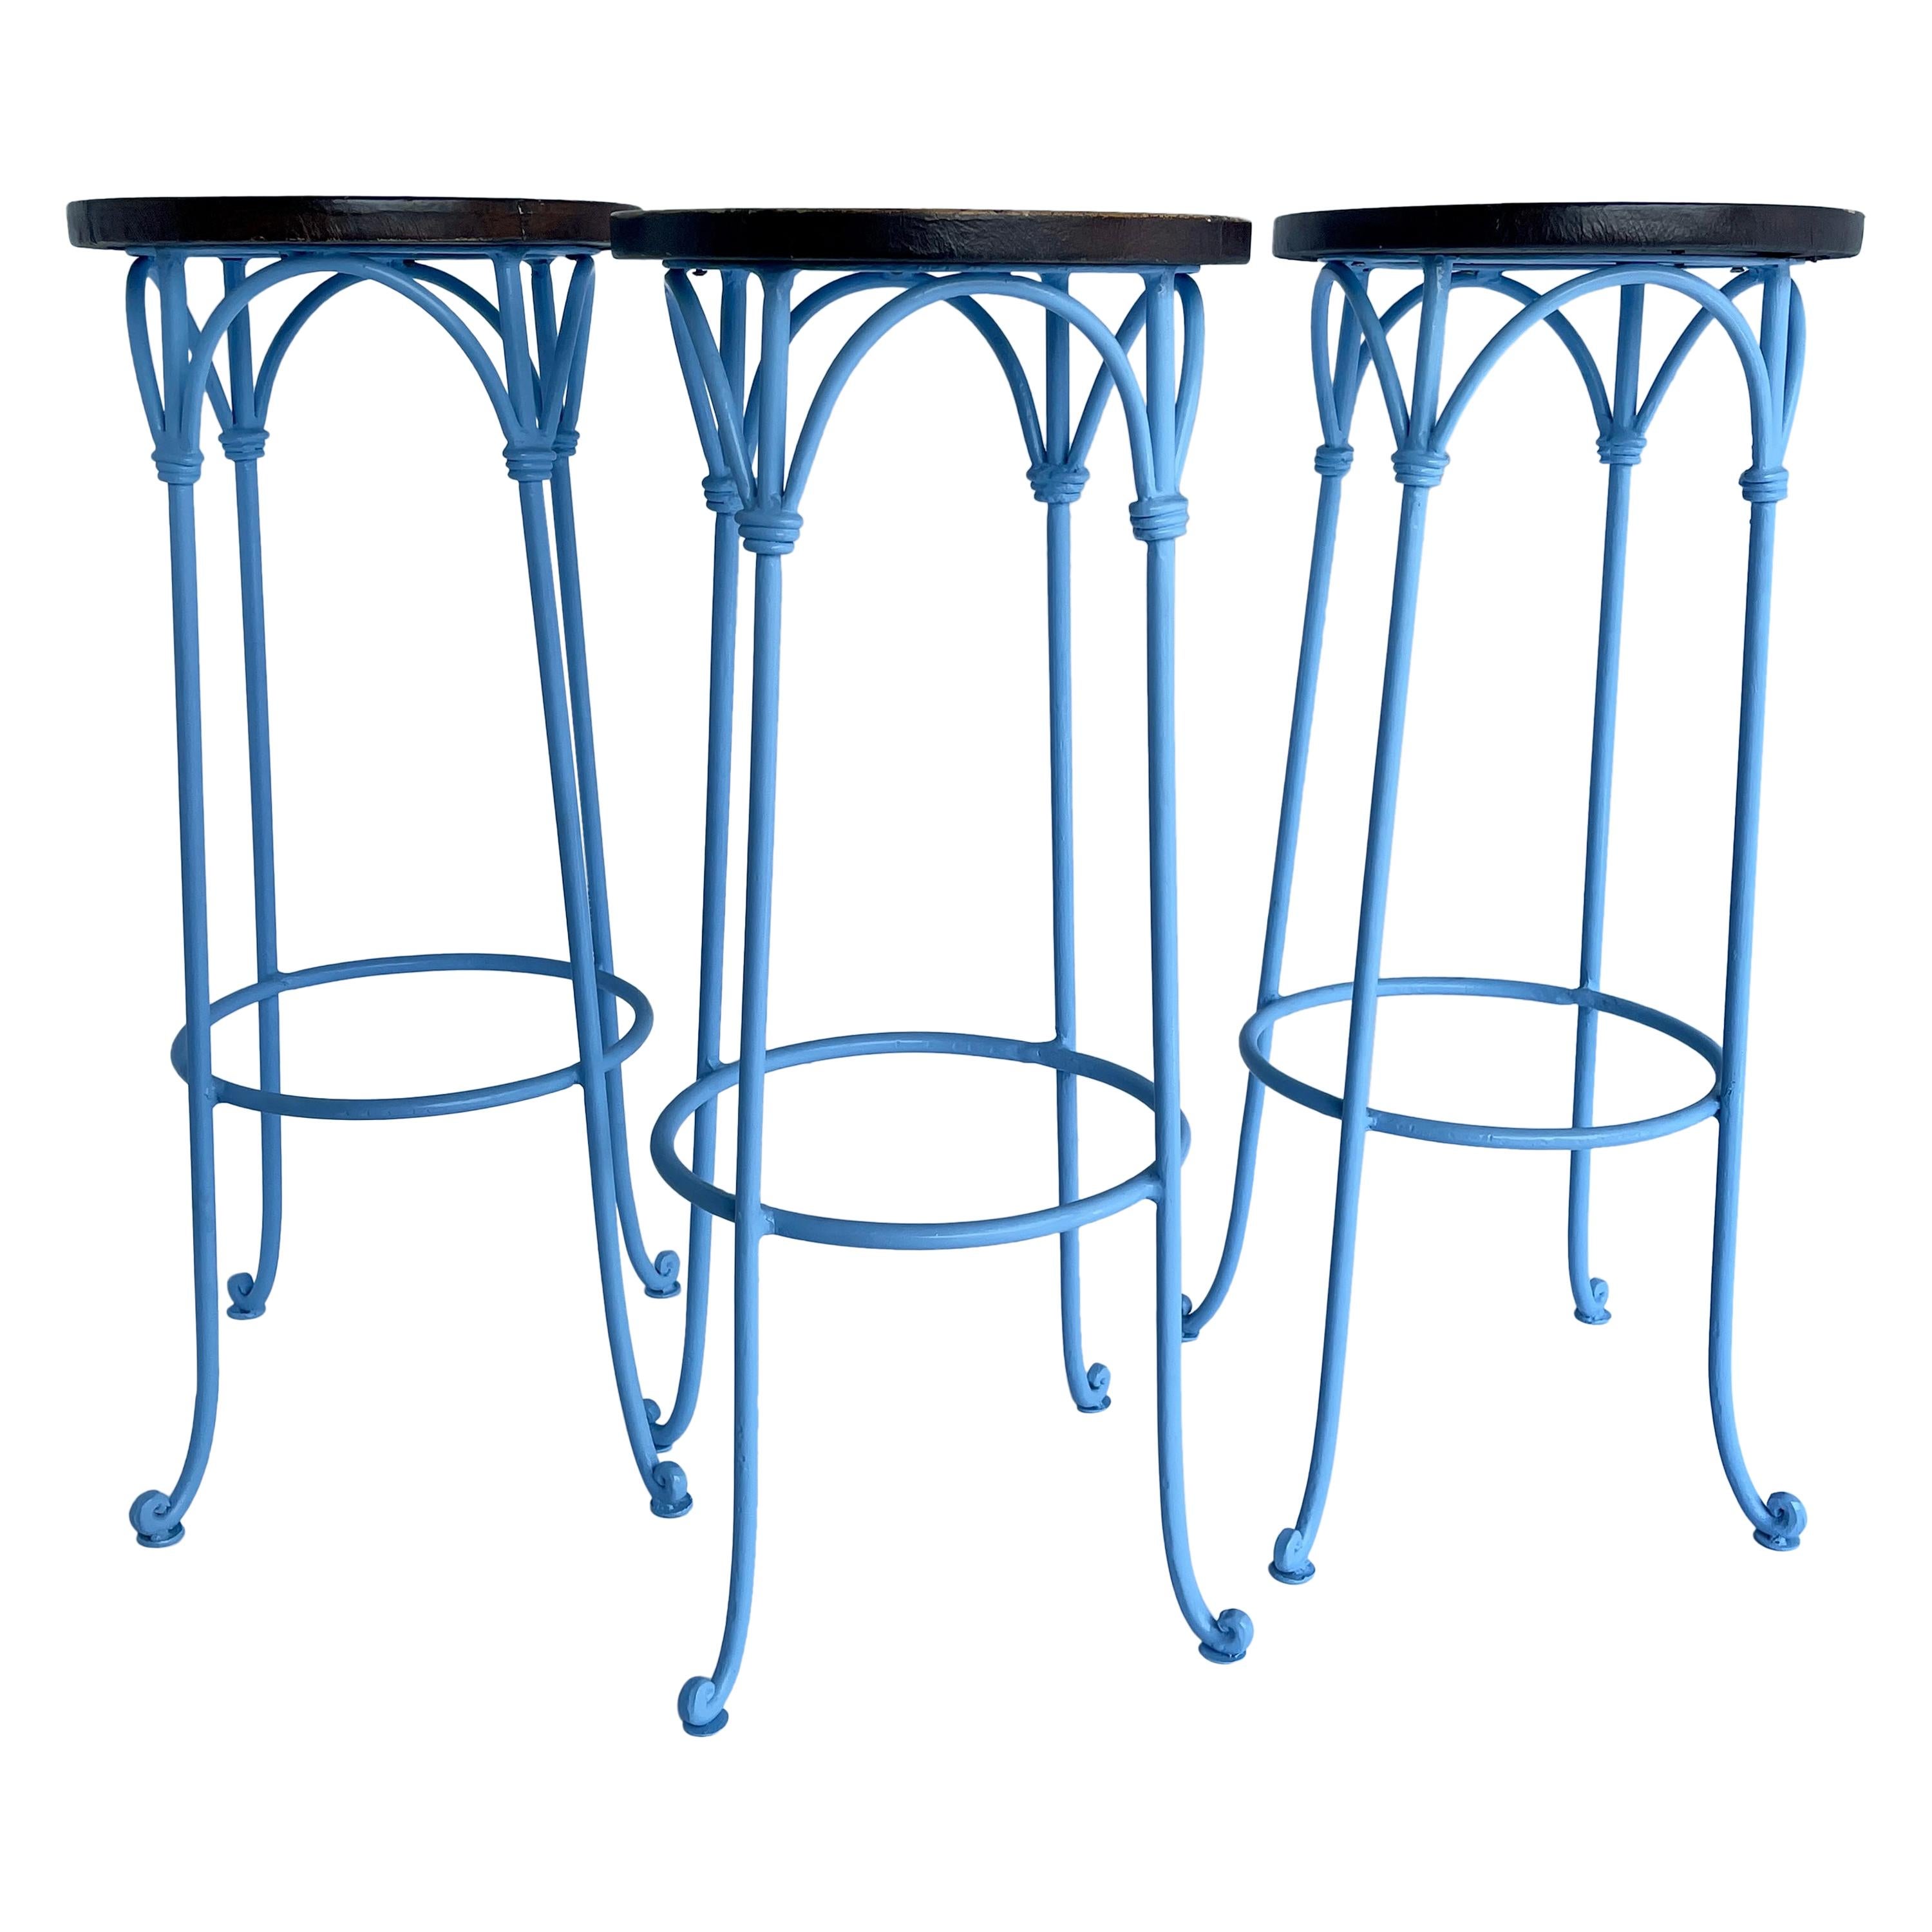 Trois tabourets de bar bleus avec assise en cuir, pieds enduits de poudre